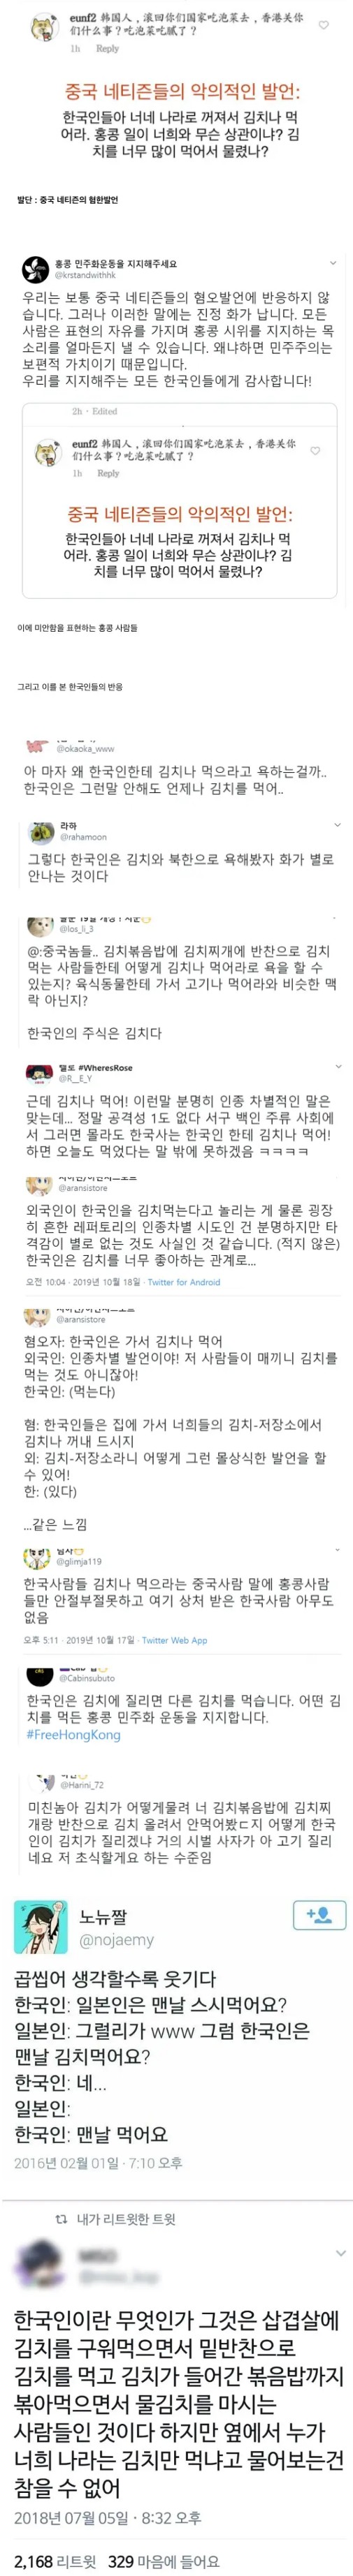 nokbeon.net-한국인에게 전혀 딜이 박히지 않는 인종차별적 발언-1번 이미지